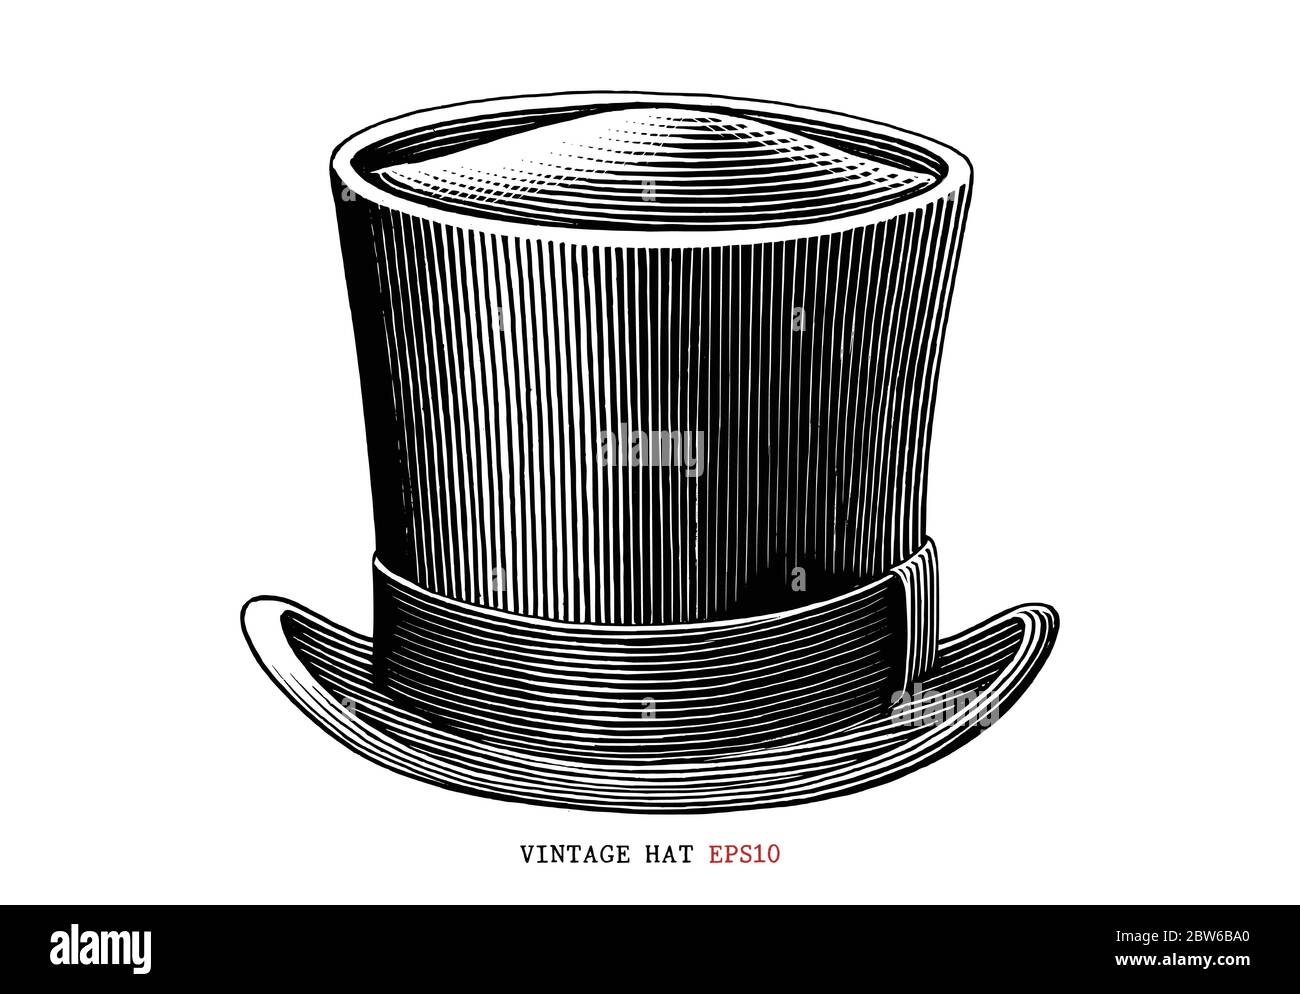 Vintage chapeau main dessin gravure style noir et blanc clipart isolé sur fond blanc Illustration de Vecteur